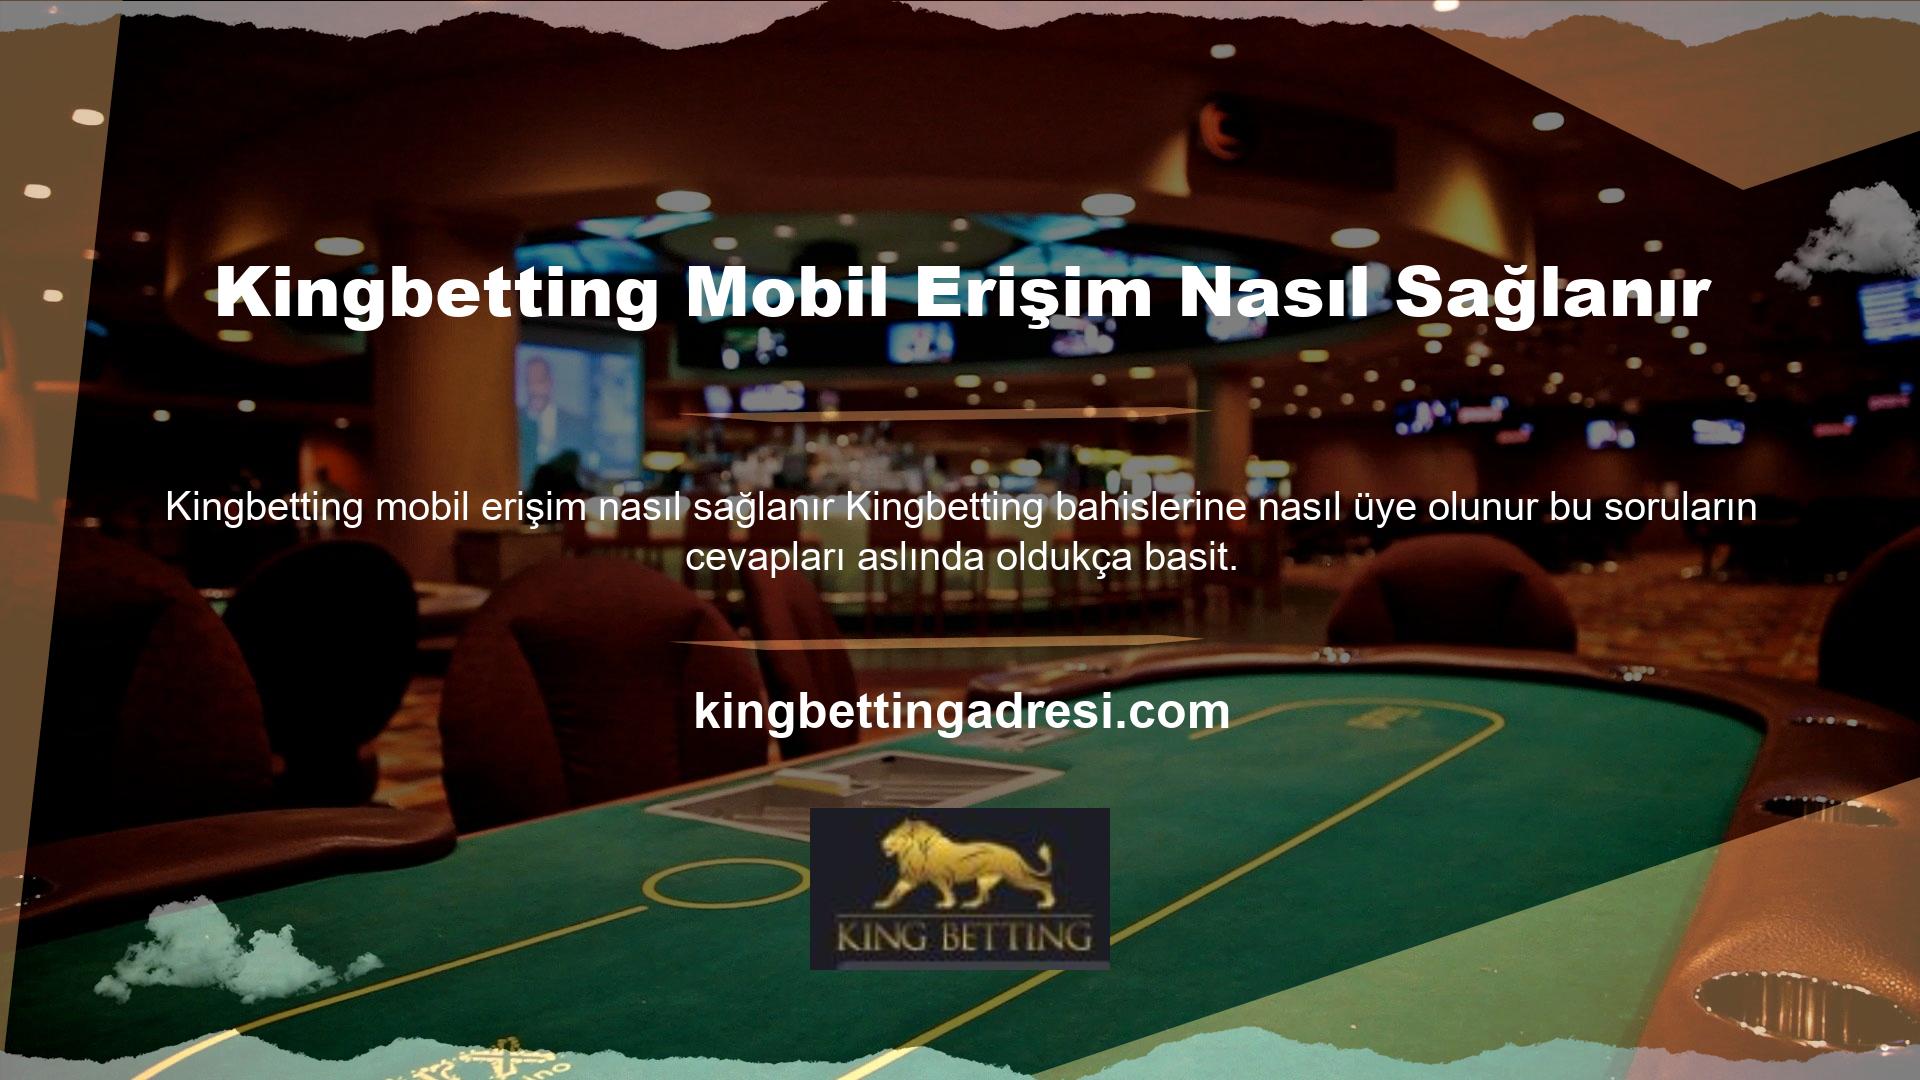 Kingbetting bahis sitesi, mobil cihazınızda oyun oynamayı daha kolay ve daha hızlı hale getiriyor